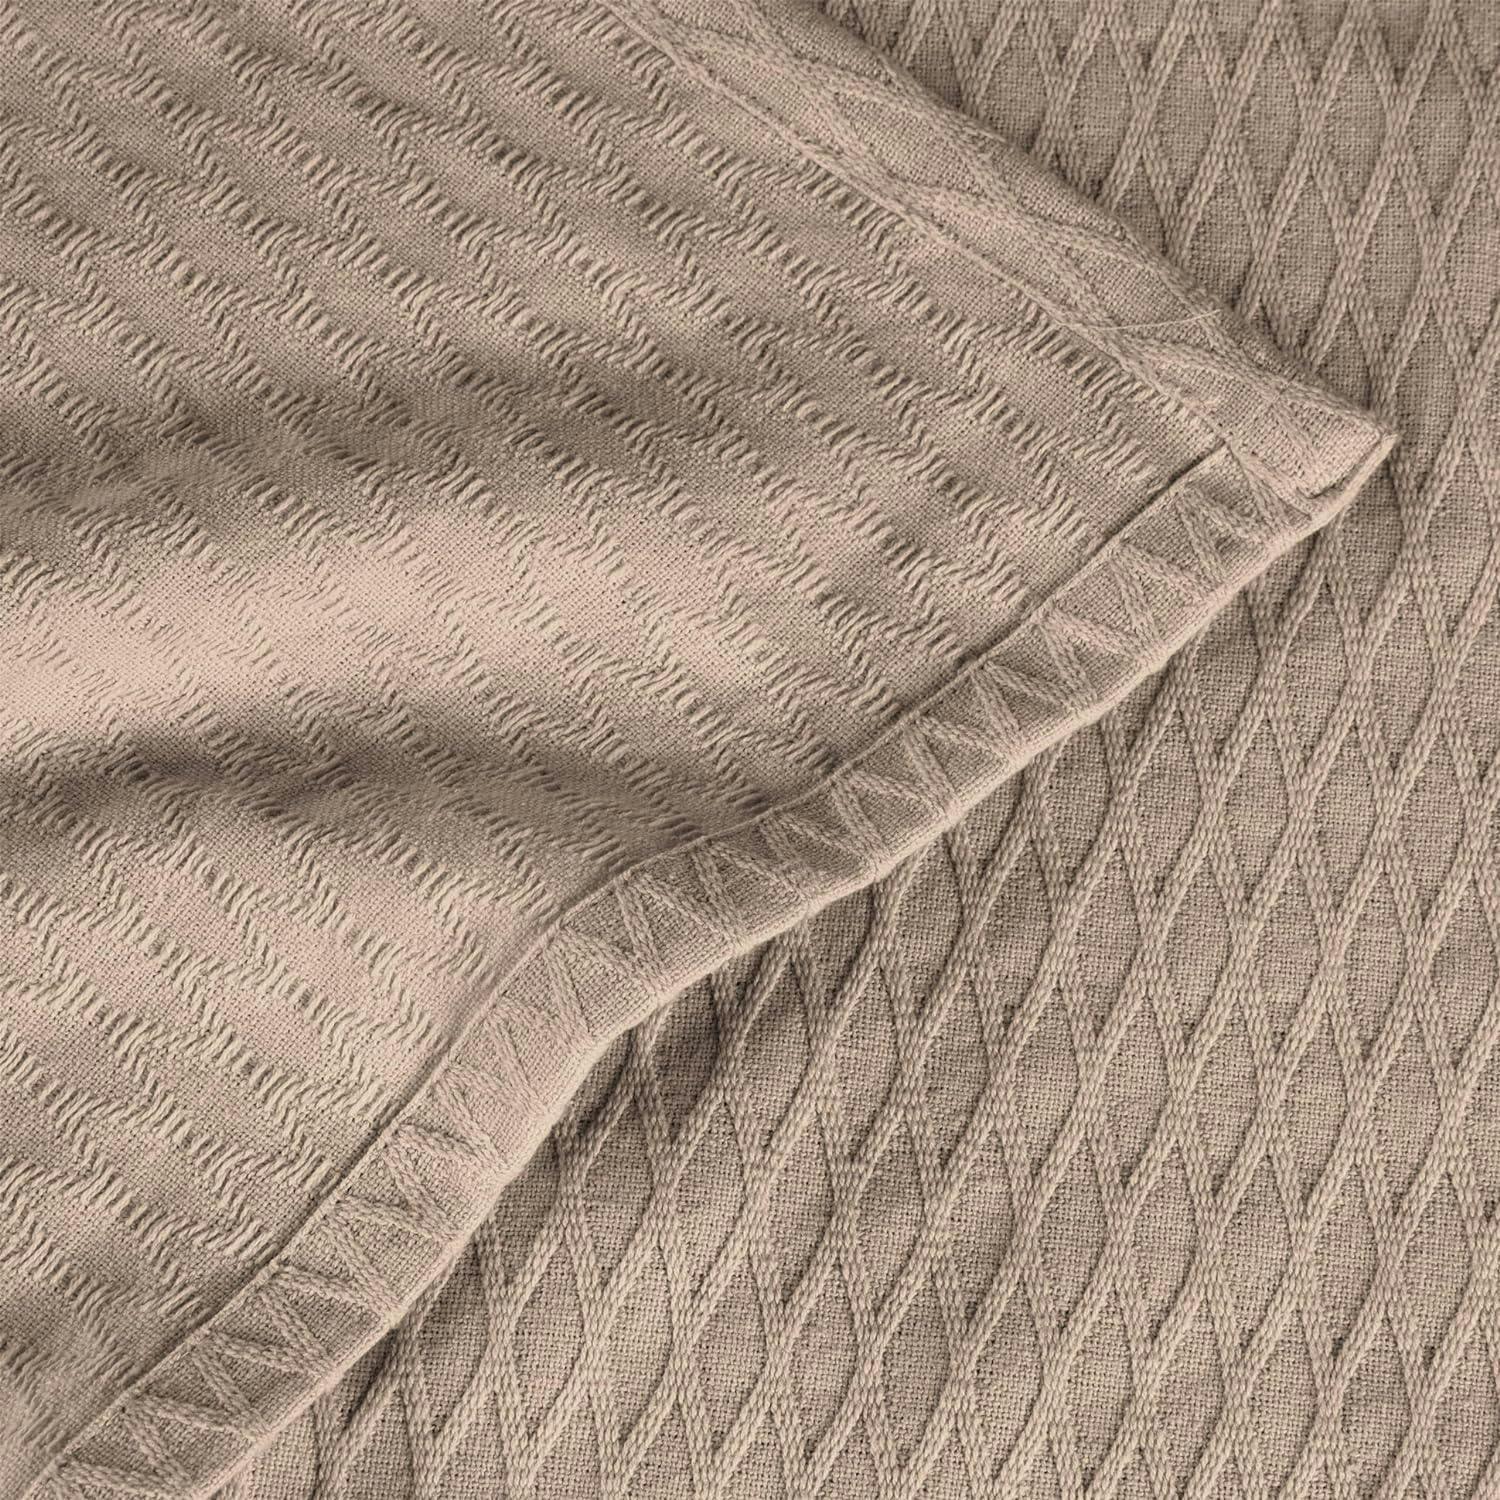 Chevron Charm All-Season Cotton Throw Blanket, 60" x 50", Khaki